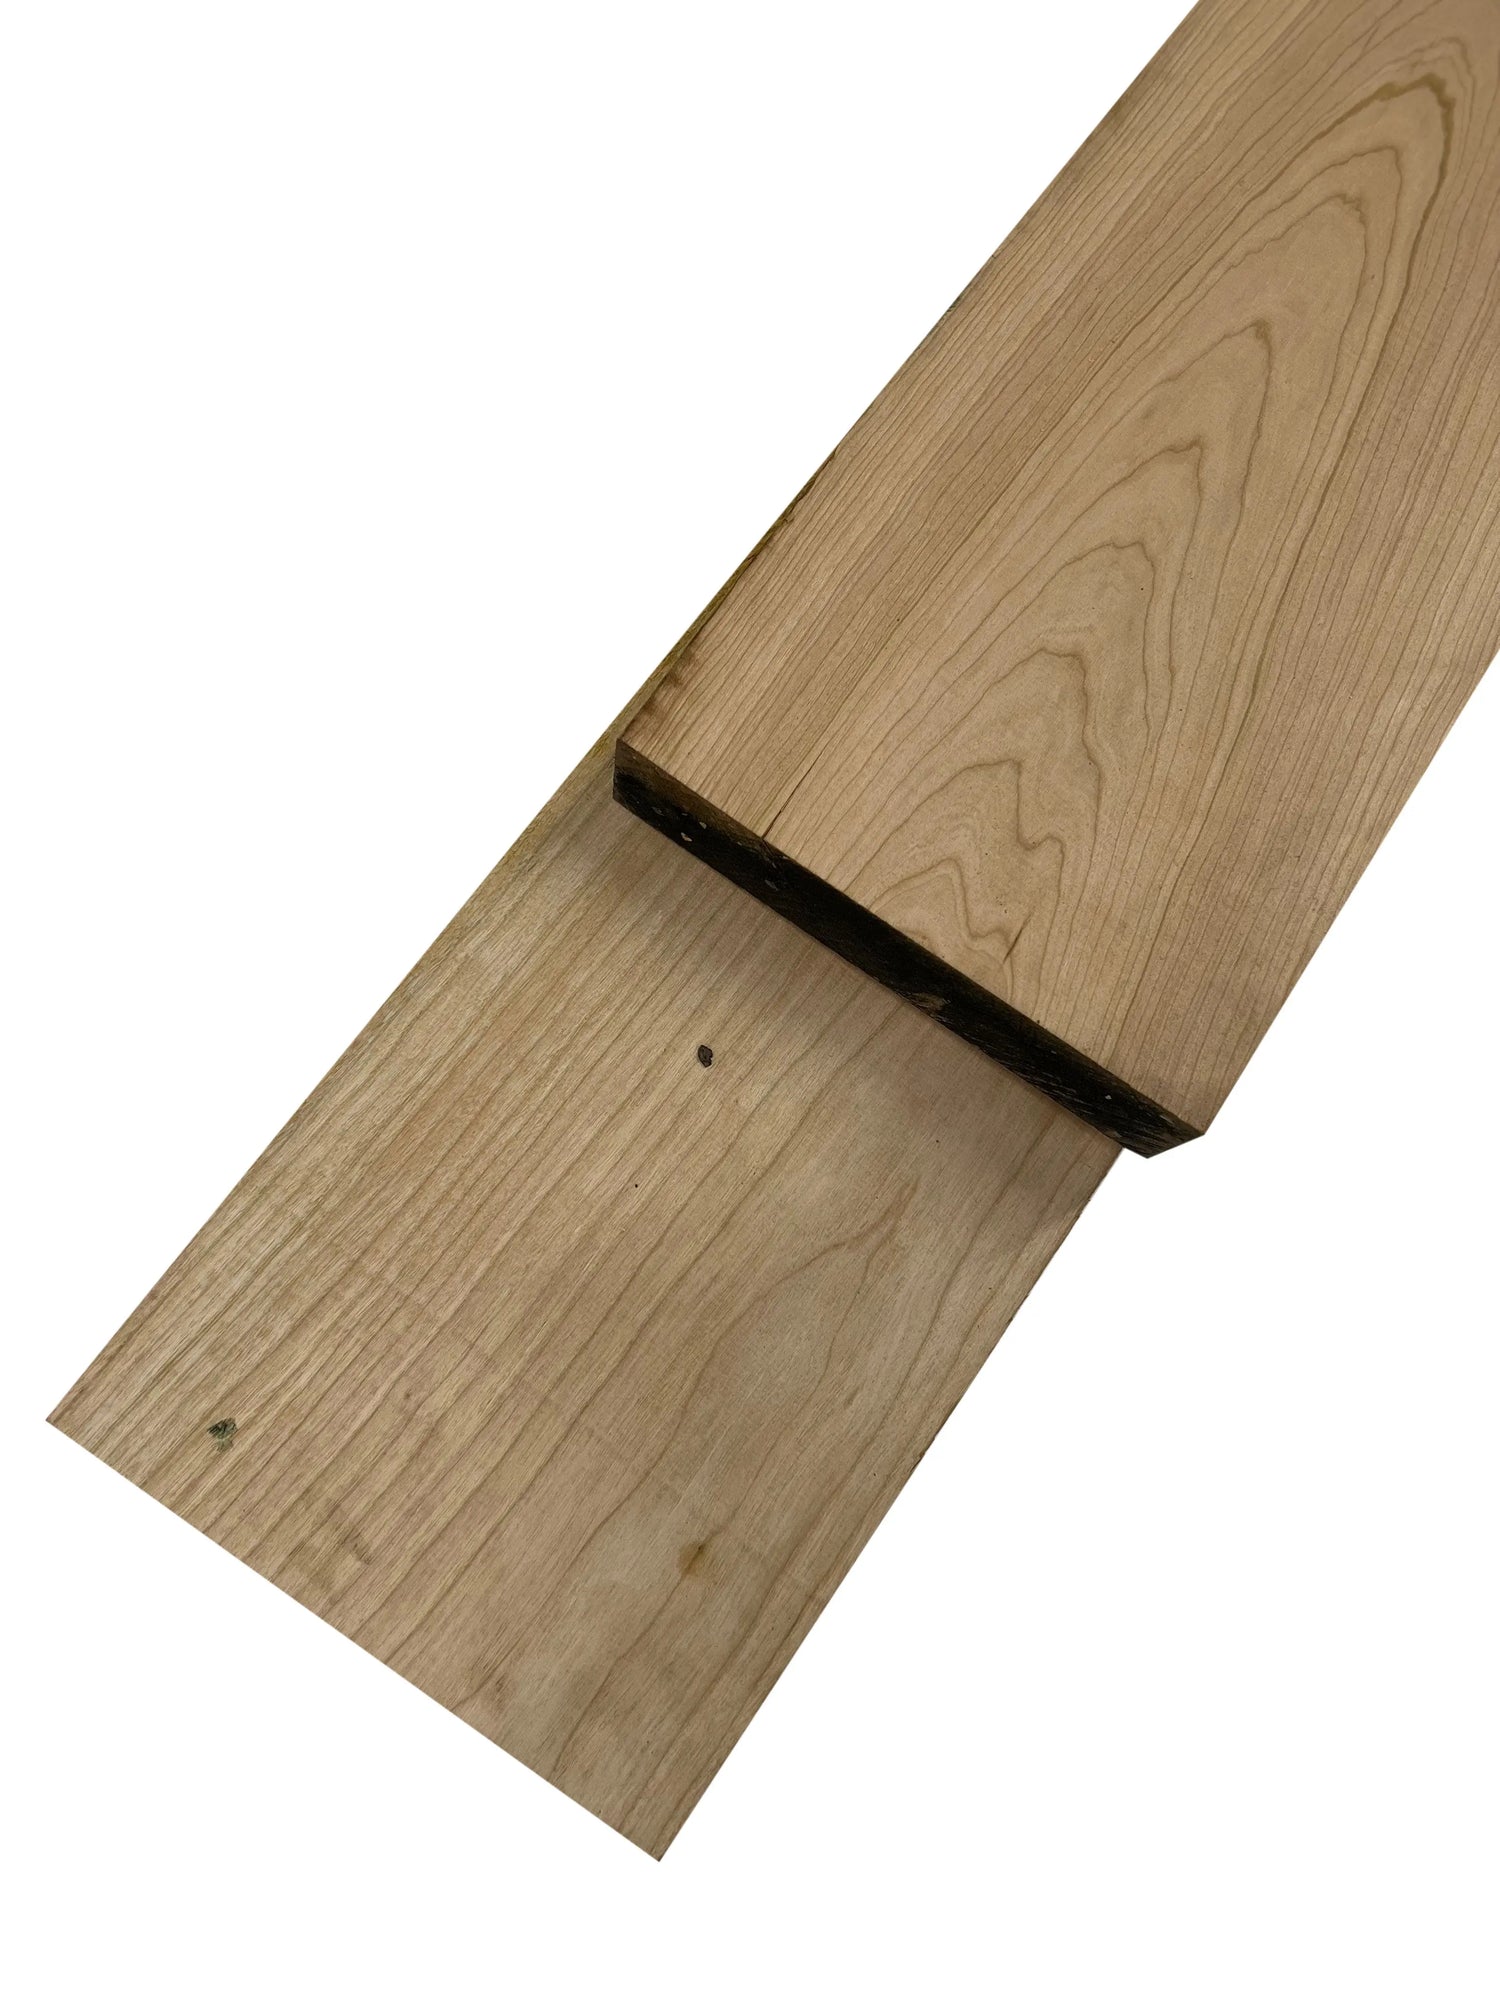 Premium Black Cherry 16/4 Lumber - Exotic Wood Zone Lumber